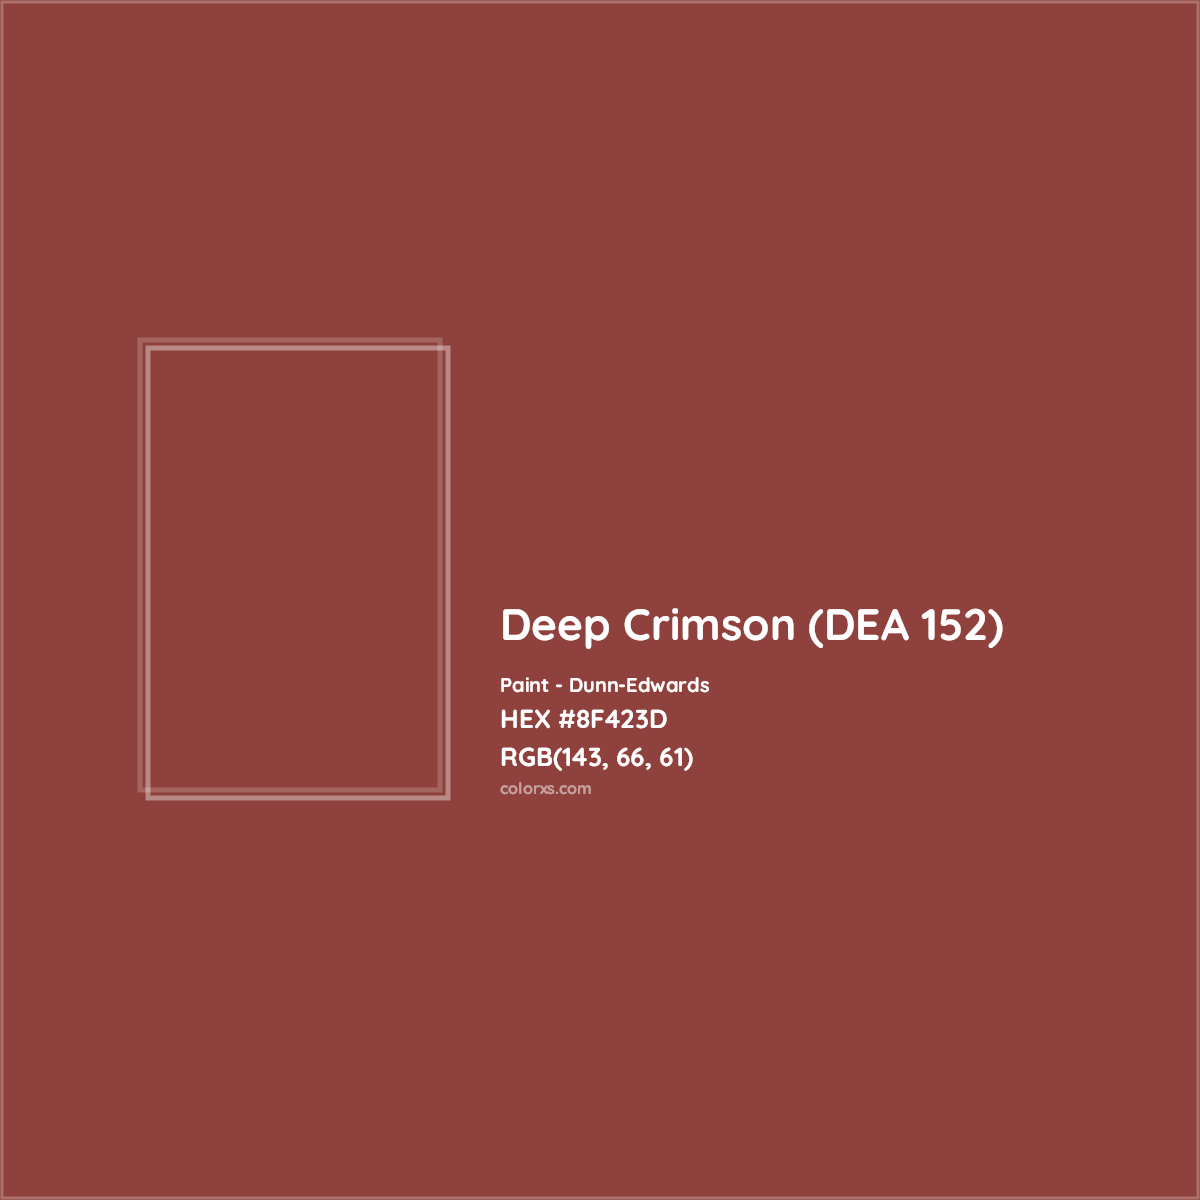 HEX #8F423D Deep Crimson (DEA 152) Paint Dunn-Edwards - Color Code